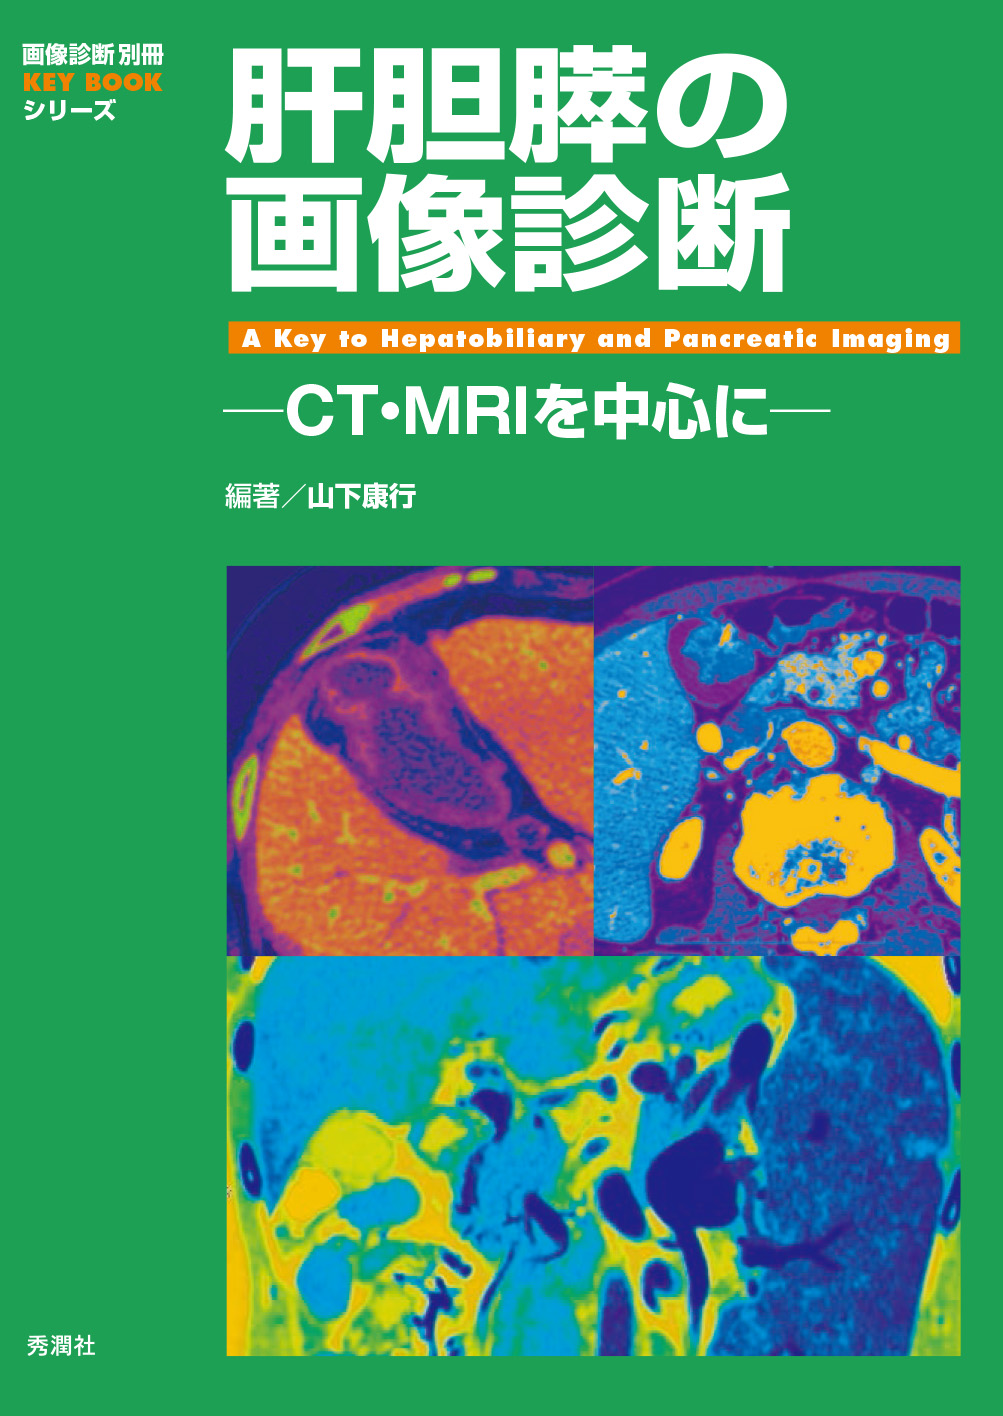 肝胆膵の画像診断 ─CT・MRIを中心に─【電子版】 | 医書.jp